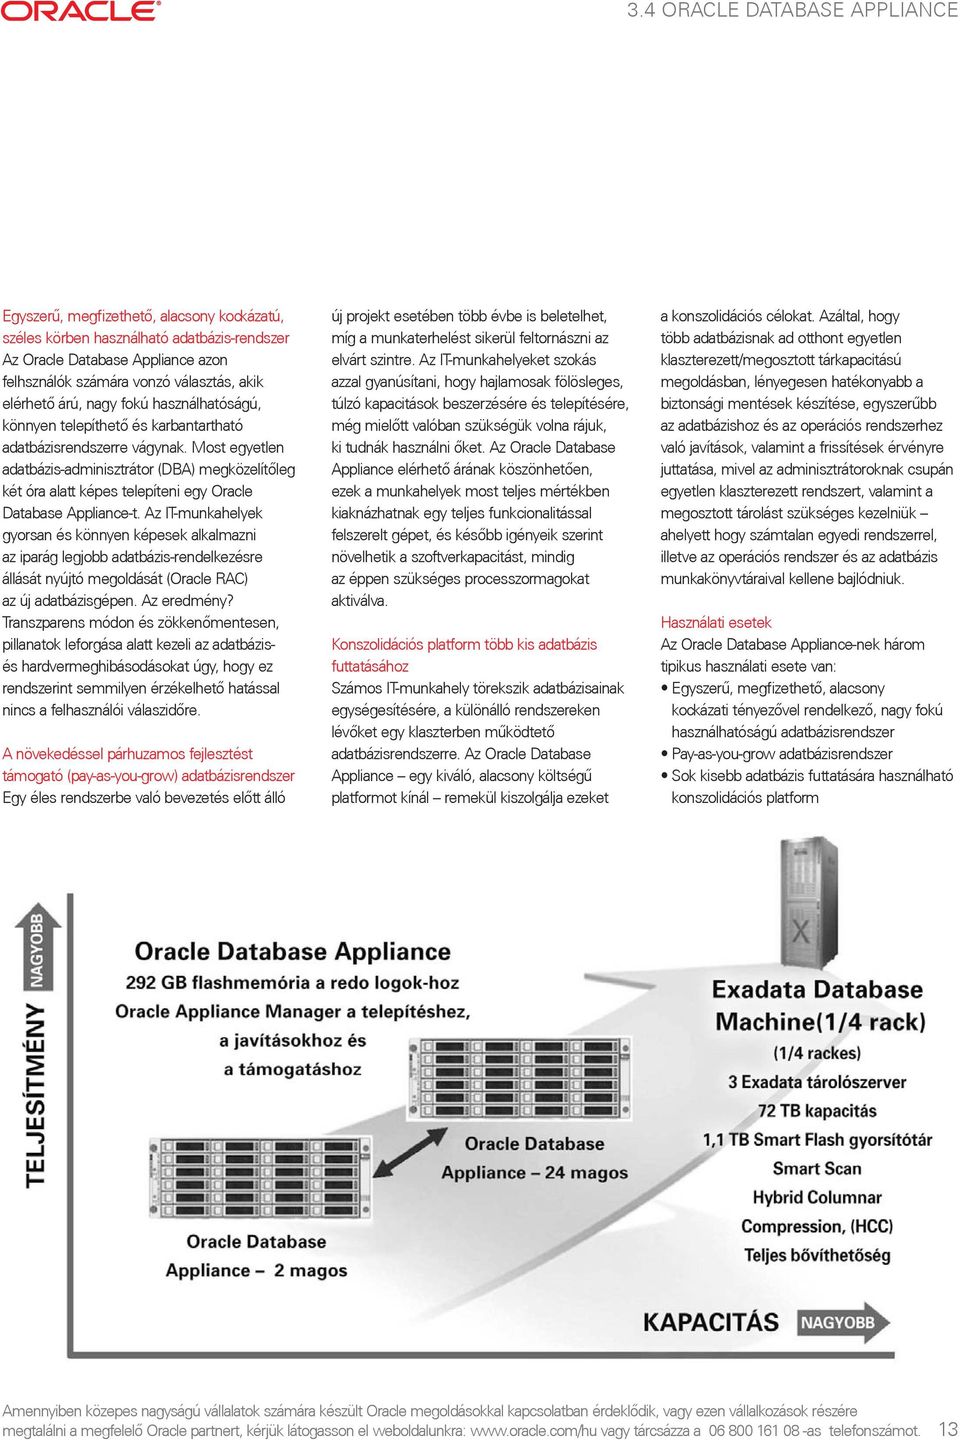 Most egyetlen adatbázis-adminisztrátor (DBA) megközelítõleg két óra alatt képes telepíteni egy Oracle Database Appliance-t.